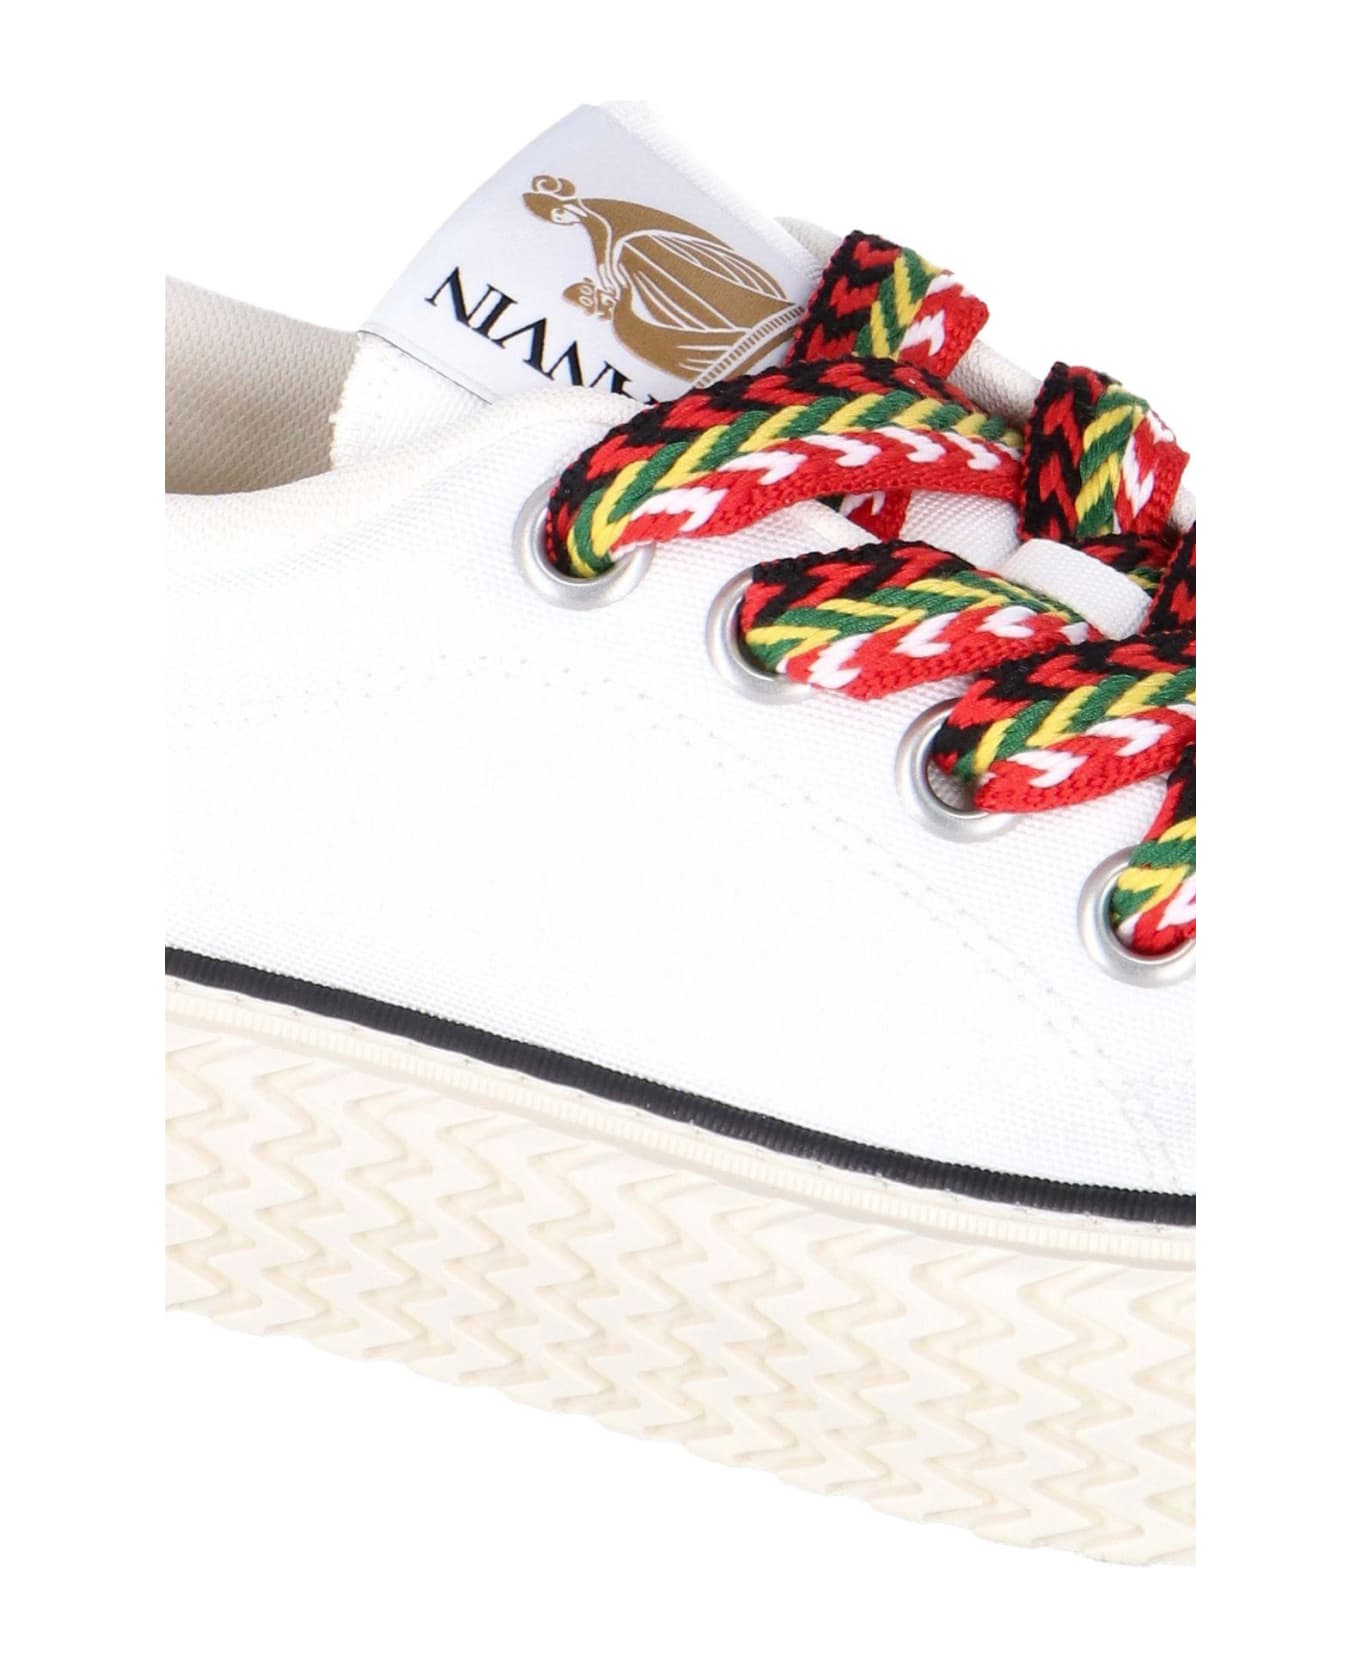 Lanvin 'curbies' Sneakers - Bianco